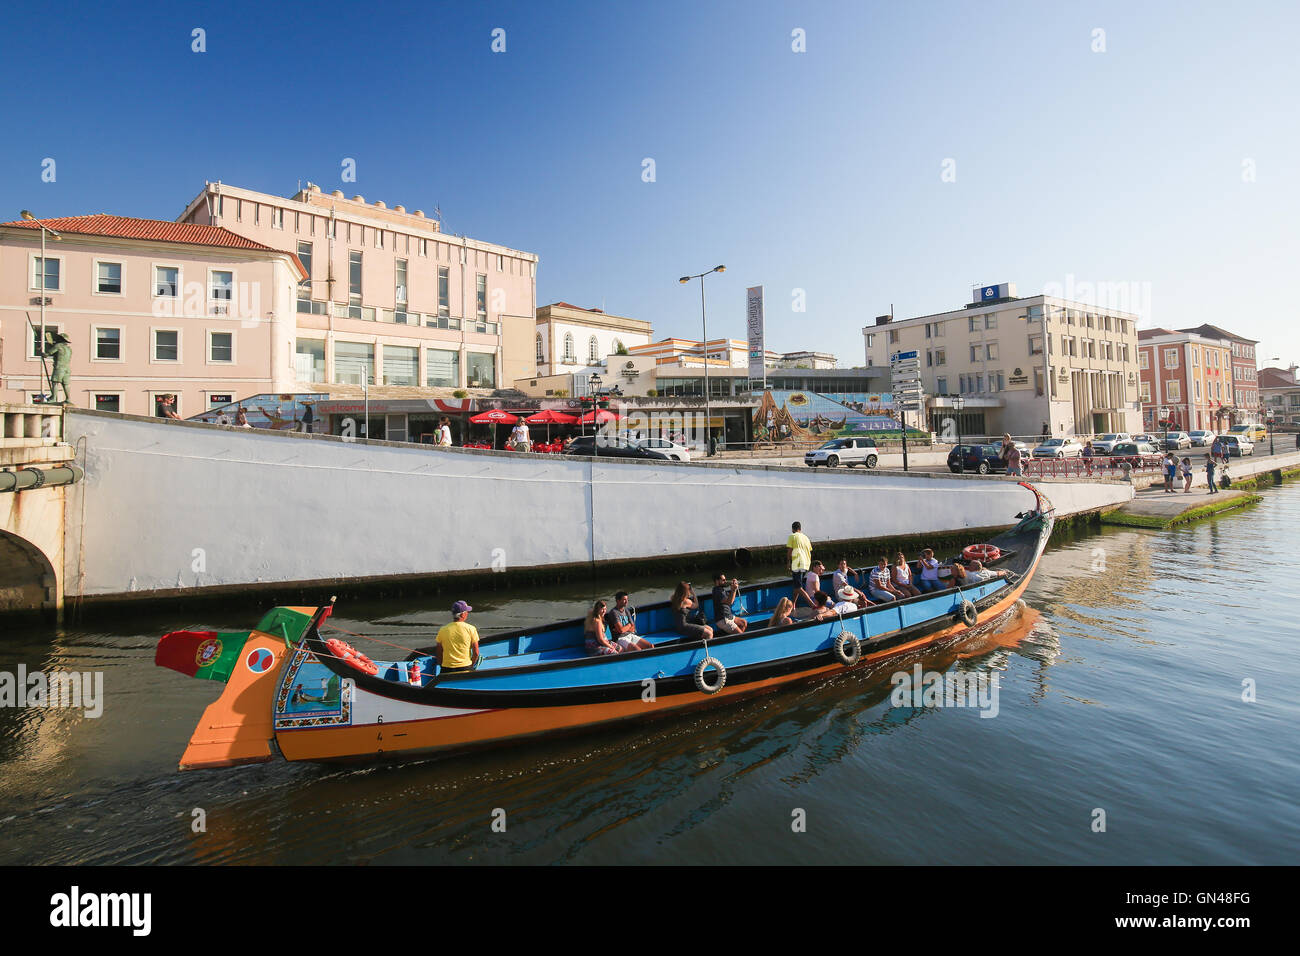 AVEIRO, PORTUGAL - 28 juillet 2016 : Moliceiro ou bateau traditionnel dans le centre d'Aveiro, Portugal, région Centre. Banque D'Images